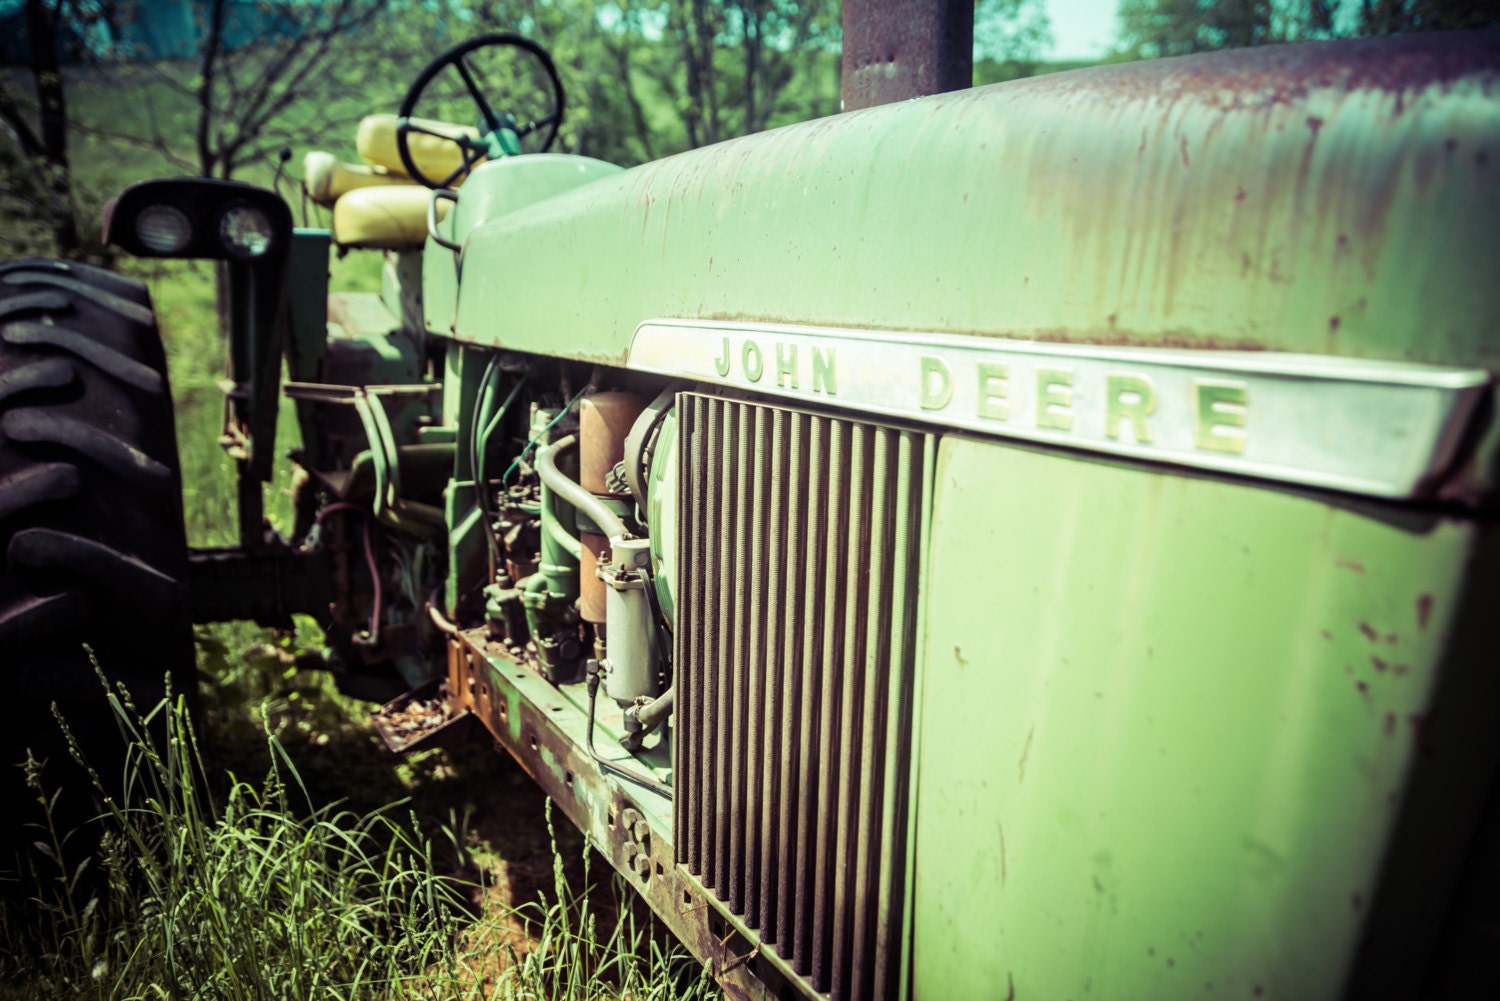 John Deere Tractor Photograph - Tractor Photography, Americana Photography, Farmhouse Photography, Metal Wall Art, Office Wall Art